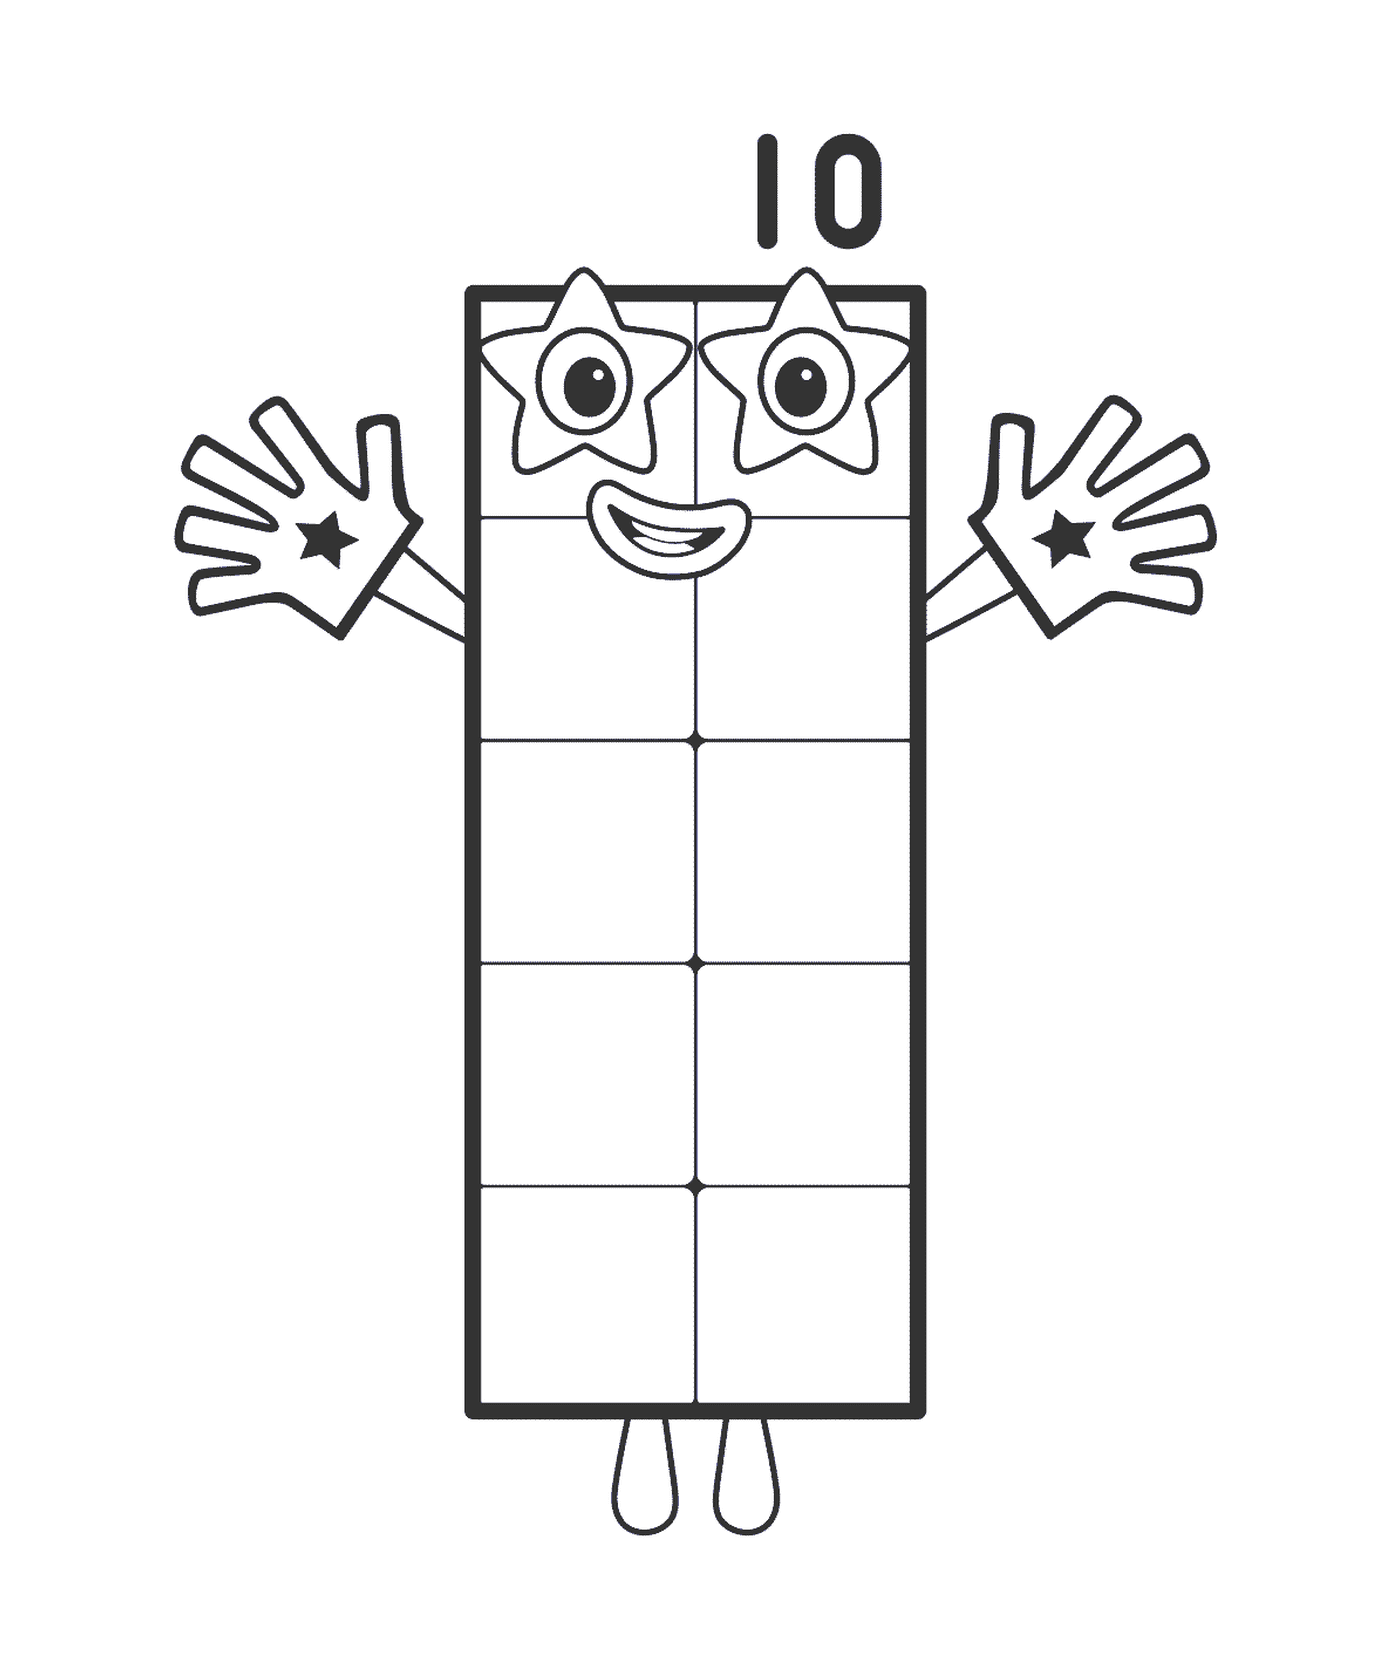  Rettangolo Numero 10, a forma rettangolare 